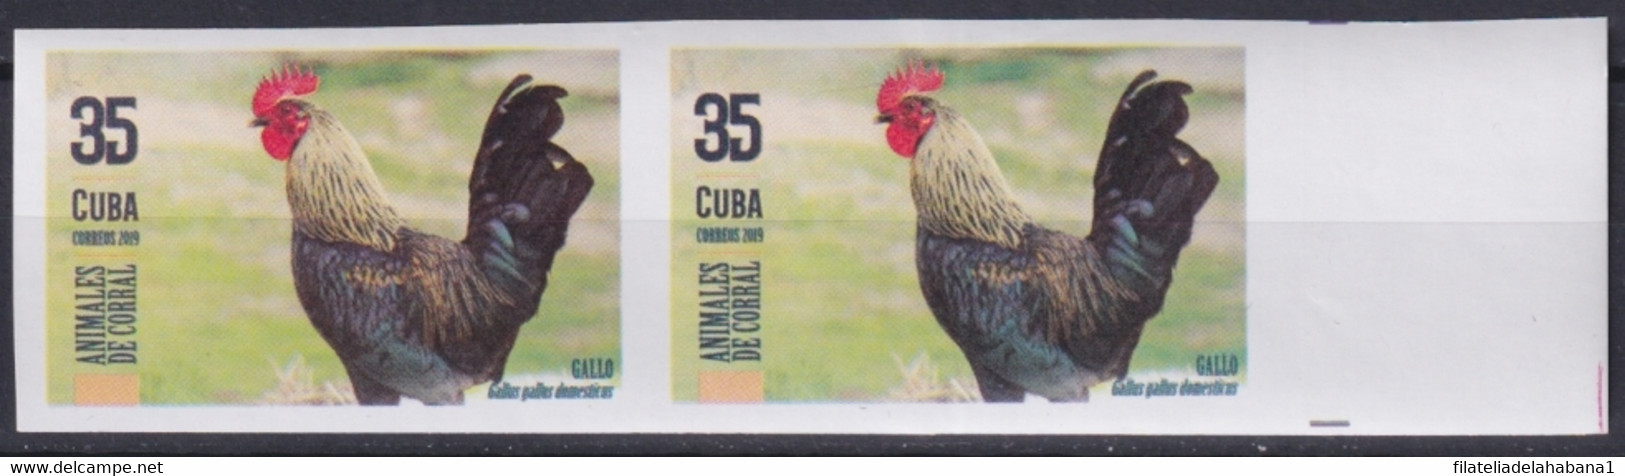 2019.195 CUBA MNH 2019 IMPERFORATED PROOF 90c ANIMALES DE CORRAL BIRD GALLO ROOSTER. - Sin Dentar, Pruebas De Impresión Y Variedades